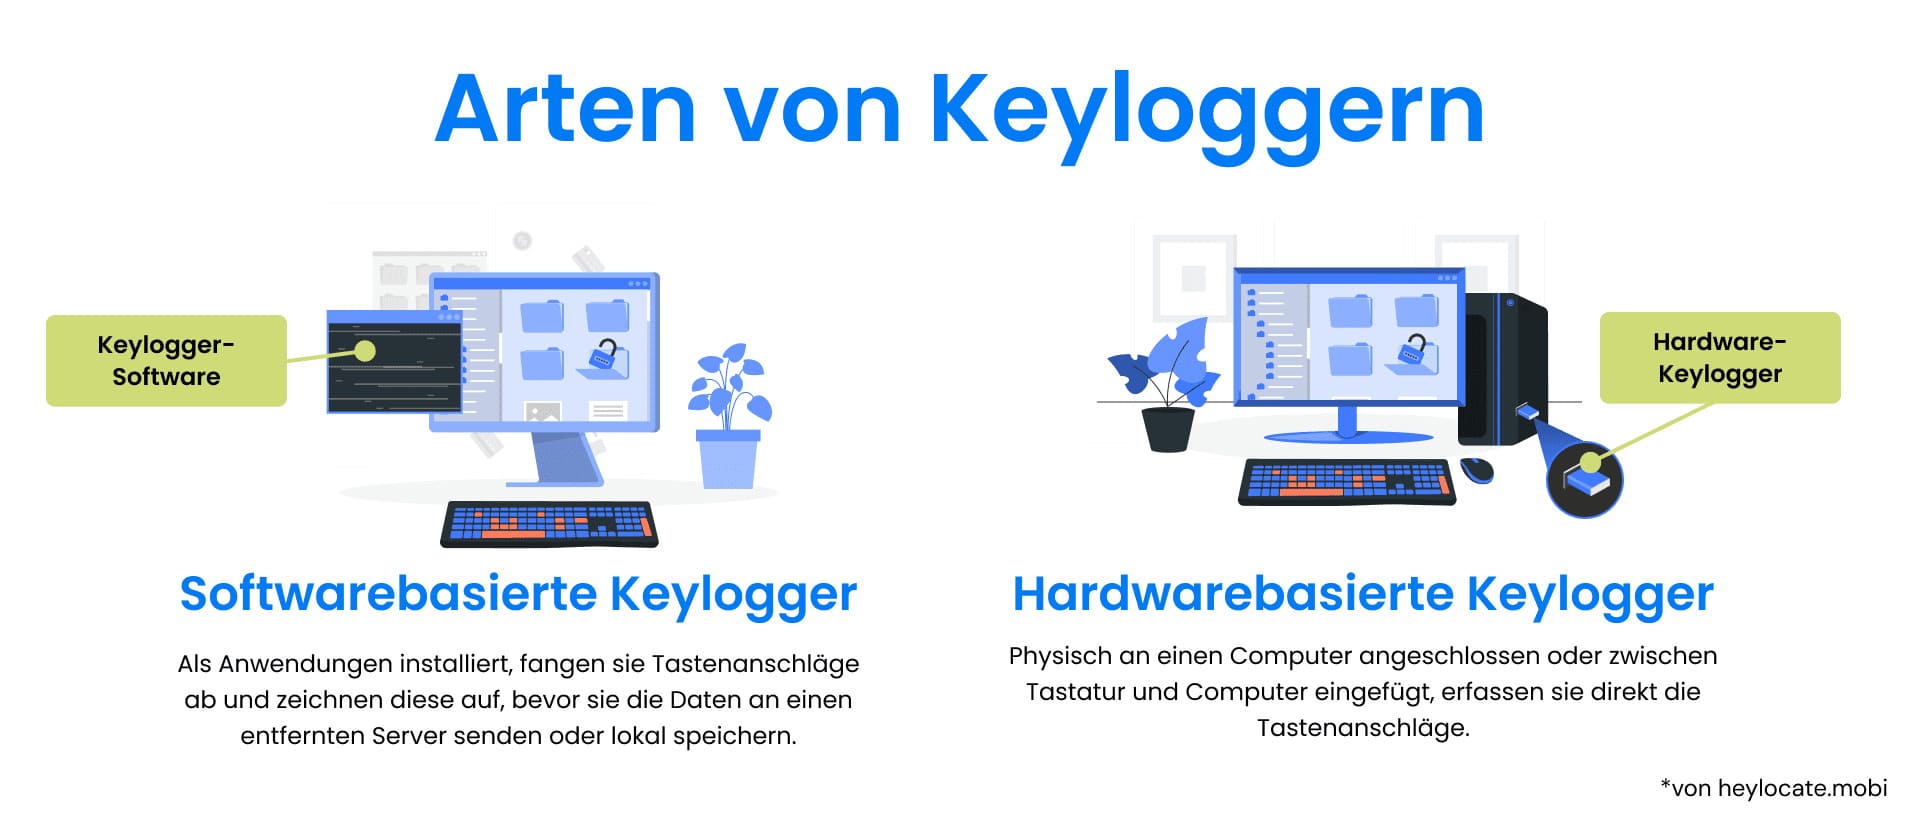 Illustrierter Vergleich zwischen softwarebasierten Keyloggern und hardwarebasierten Keyloggern mit Darstellung ihrer Funktionsweise